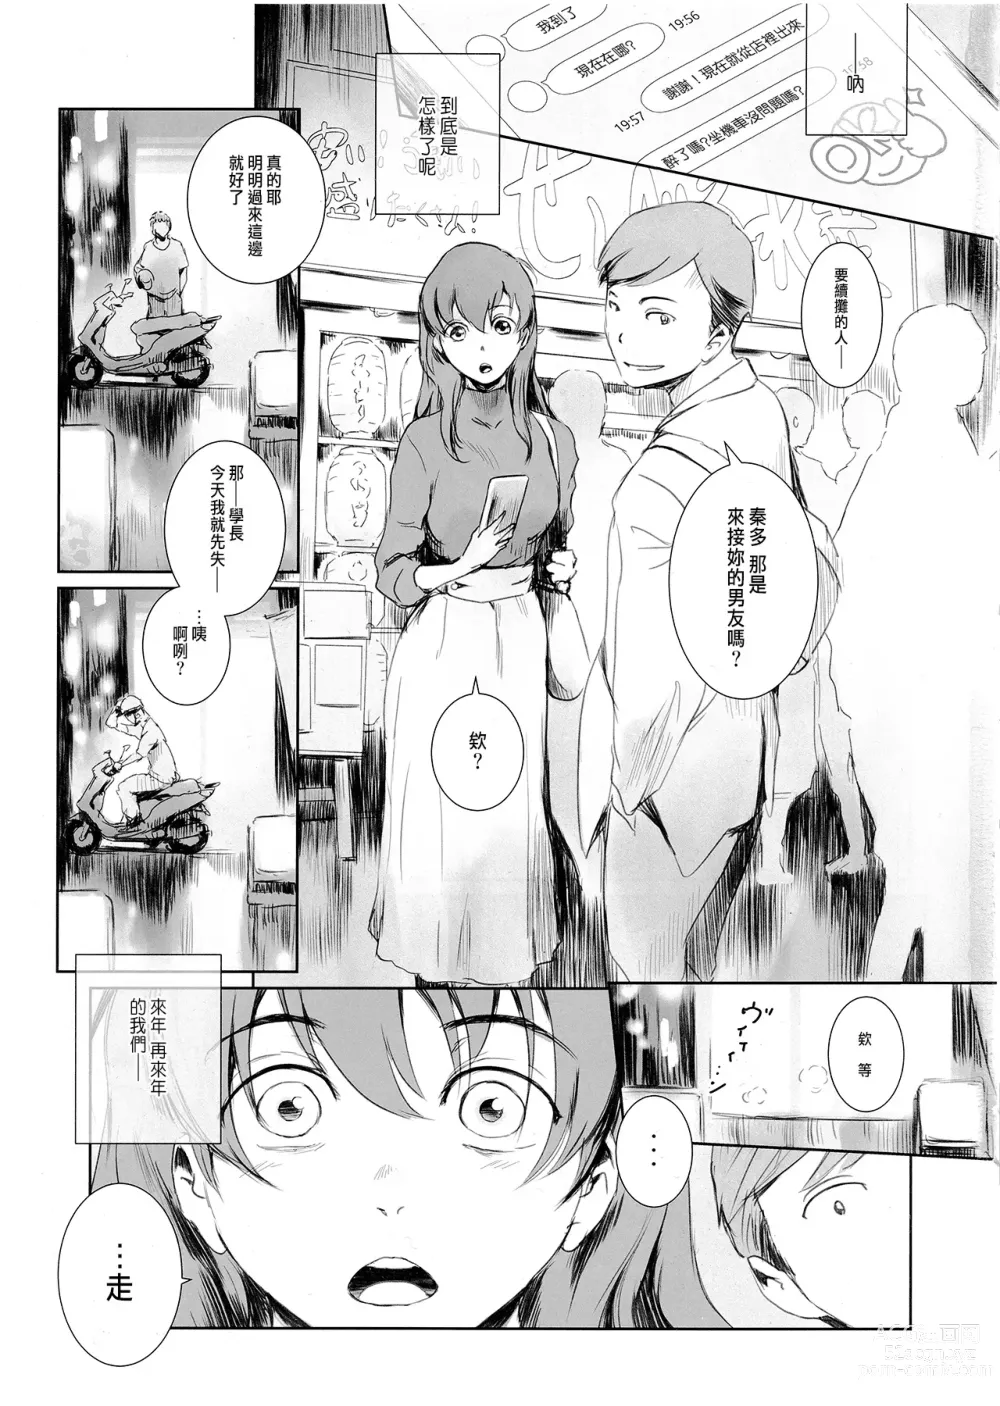 Page 2 of doujinshi Niketsu no Futari